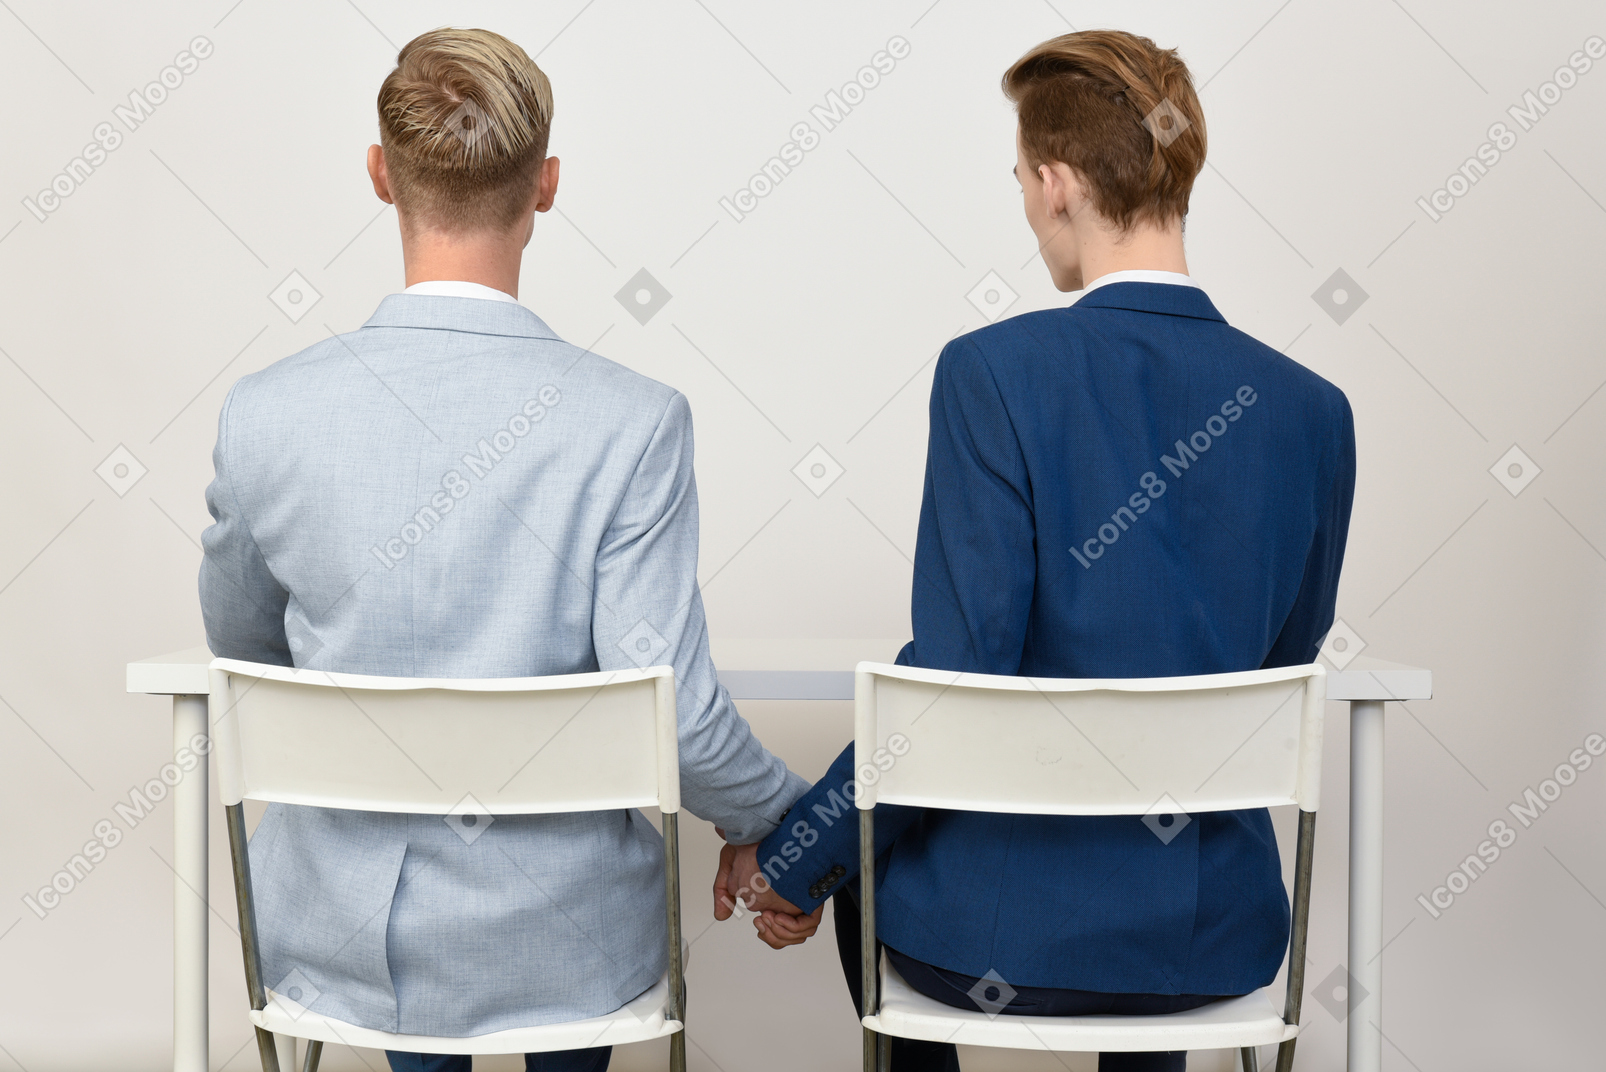 テーブルの下に手を繋いでいる2人の男性の同僚